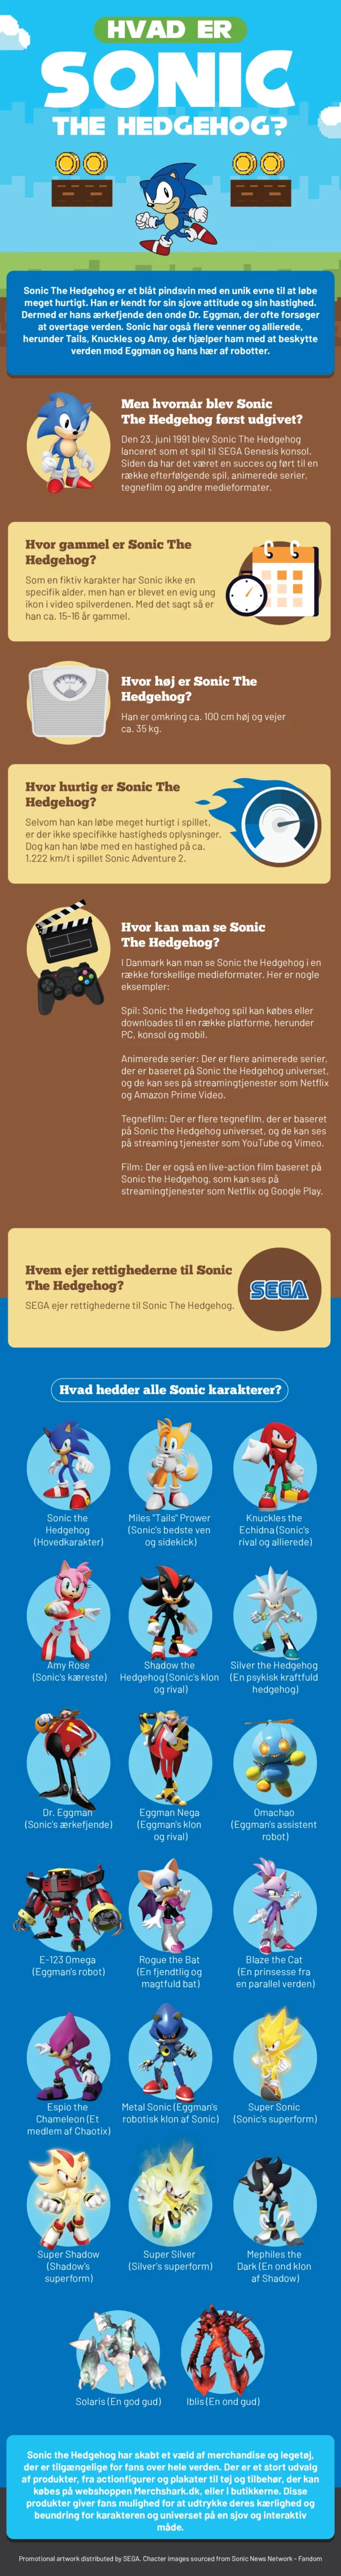 Hvad er Sonic The Hedgehog?